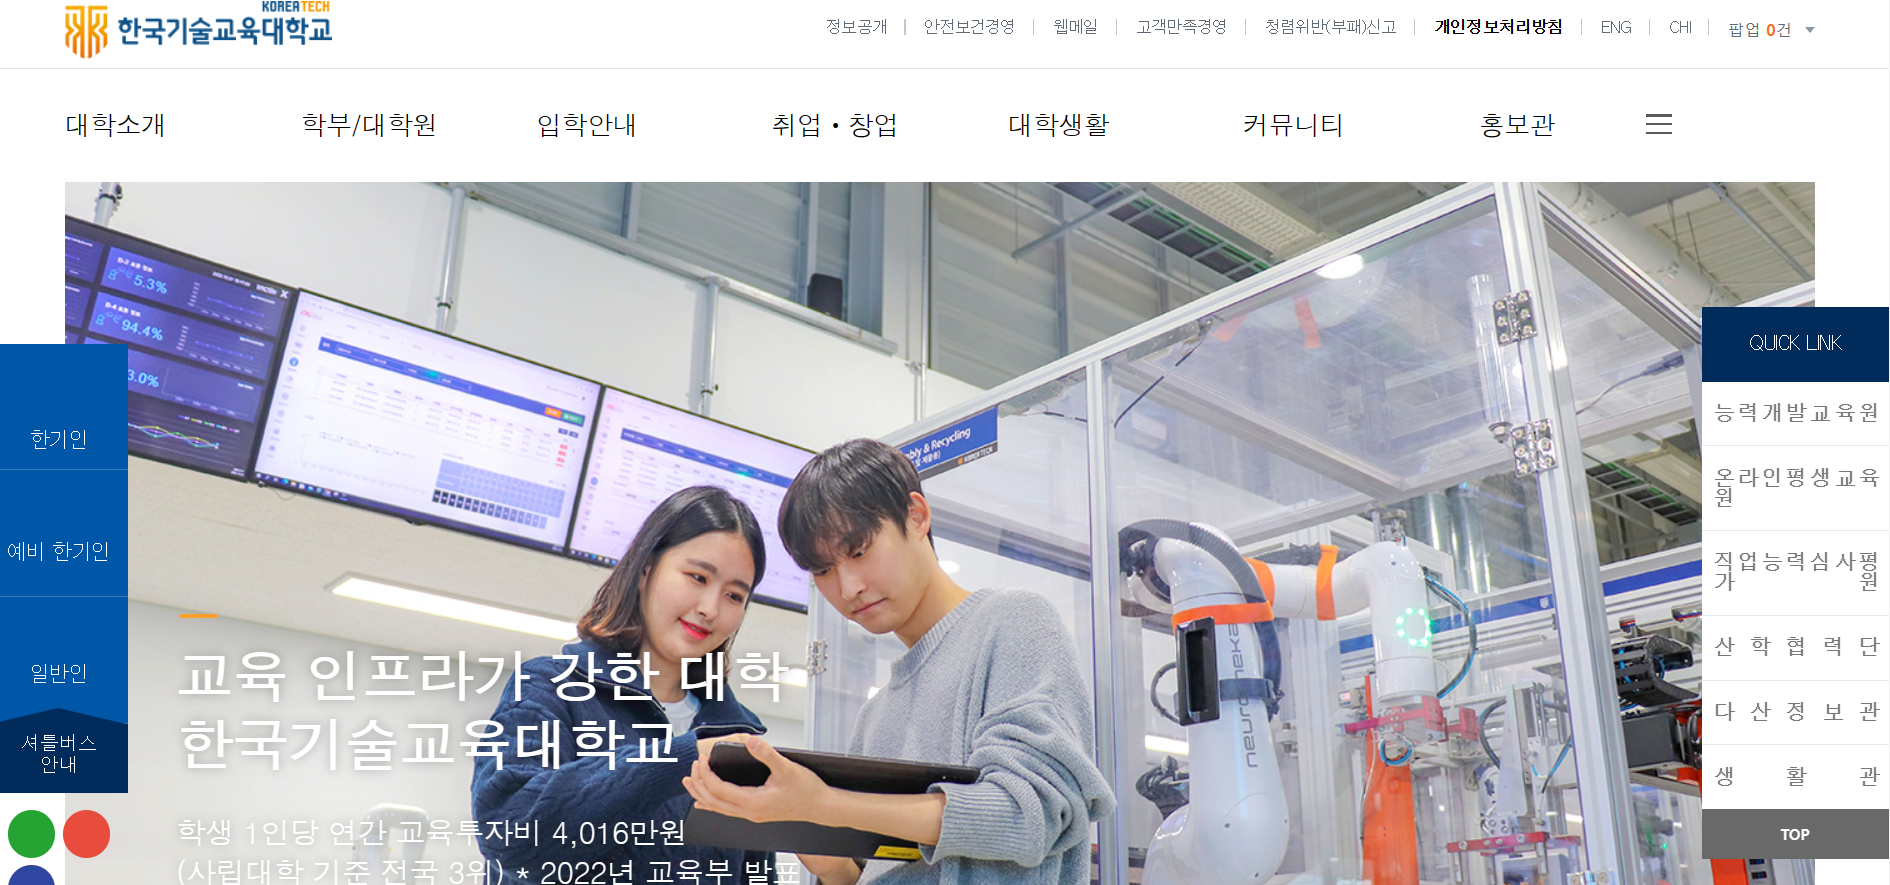 한국기술교육대학교 홈페이지